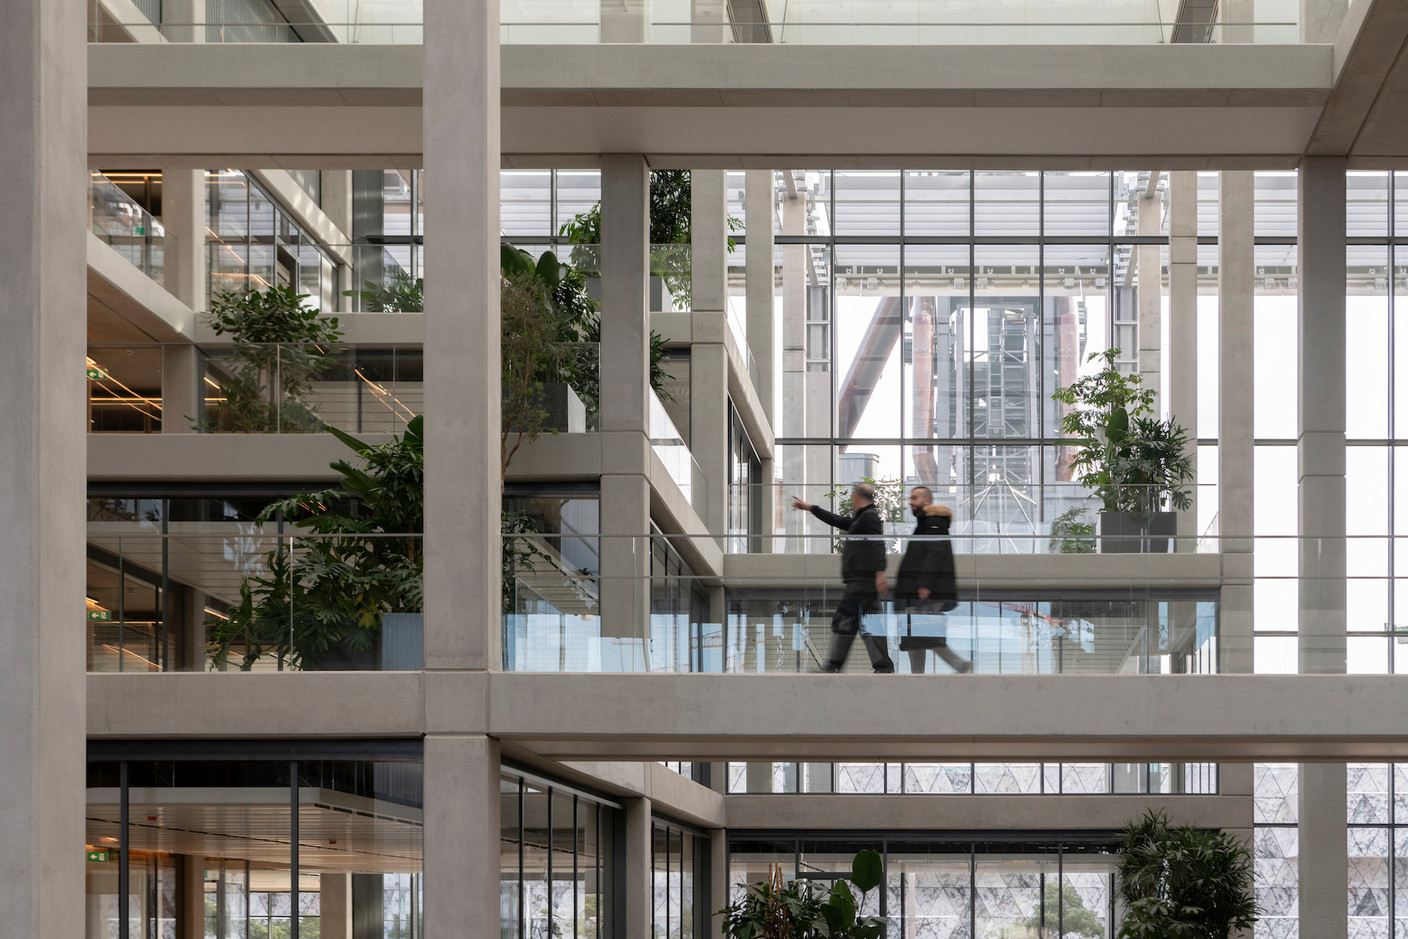 Grâce aux façades vitrées, l’environnement du bâtiment avec les hauts fourneaux est perceptible depuis l’intérieur. (Photo: Nigel Young/Foster + Partners)